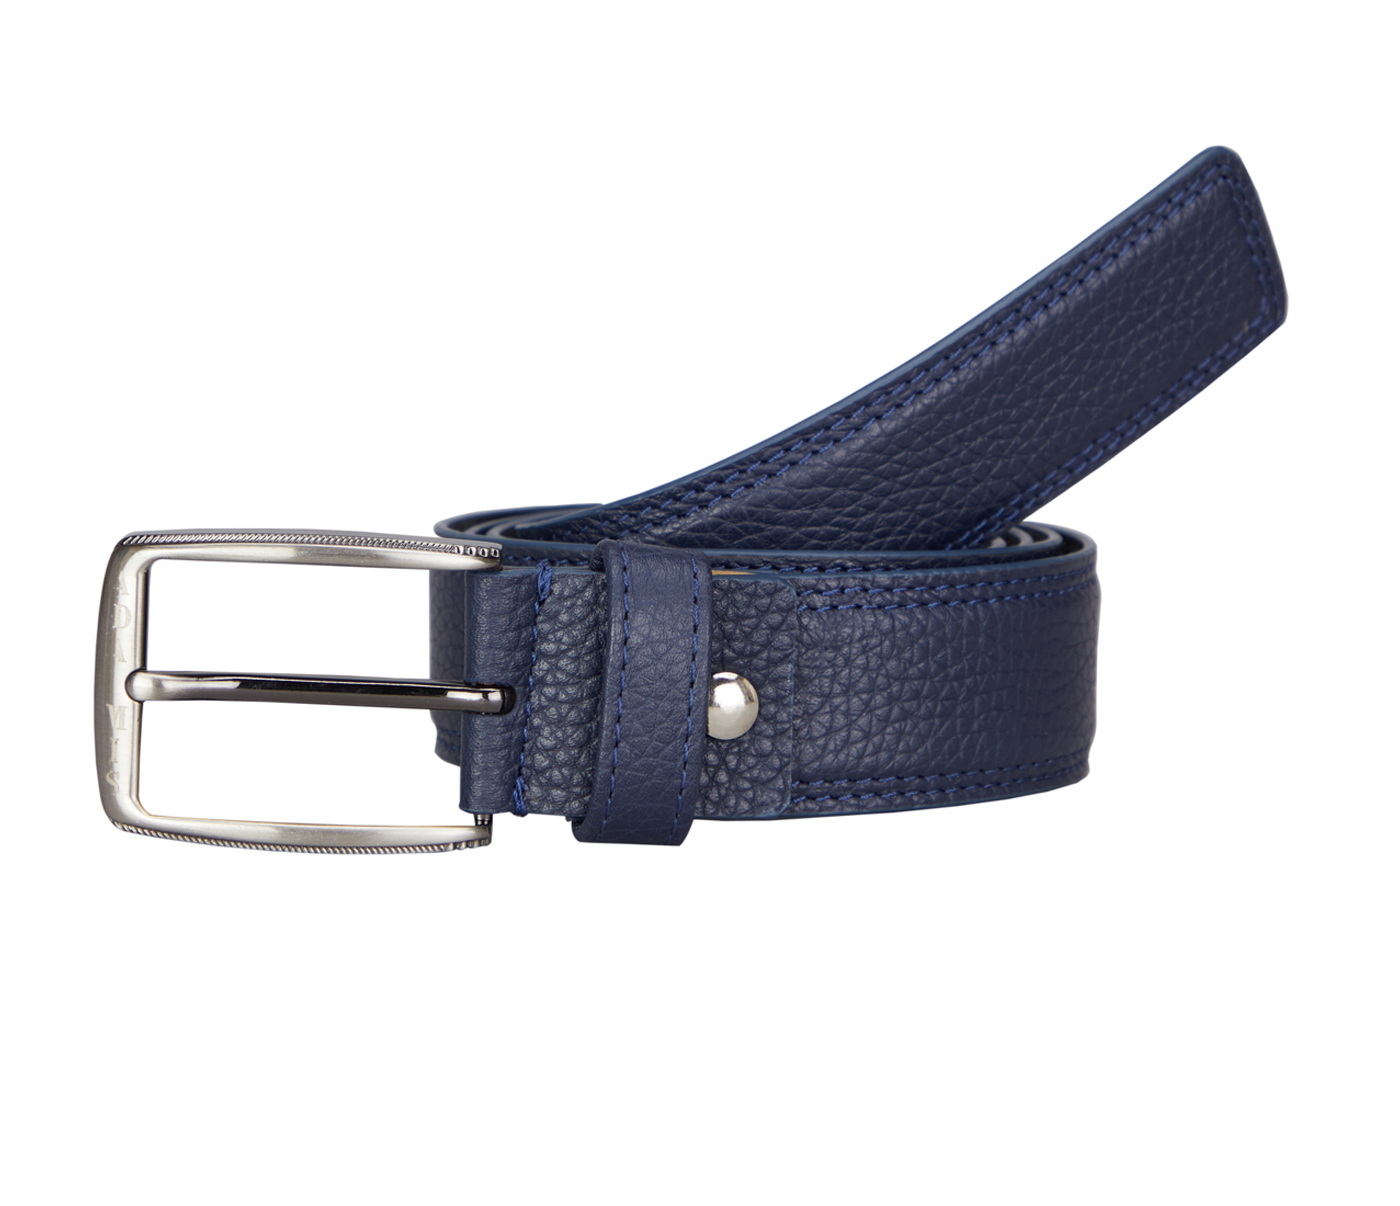  Leather Belt(Blue)BL11